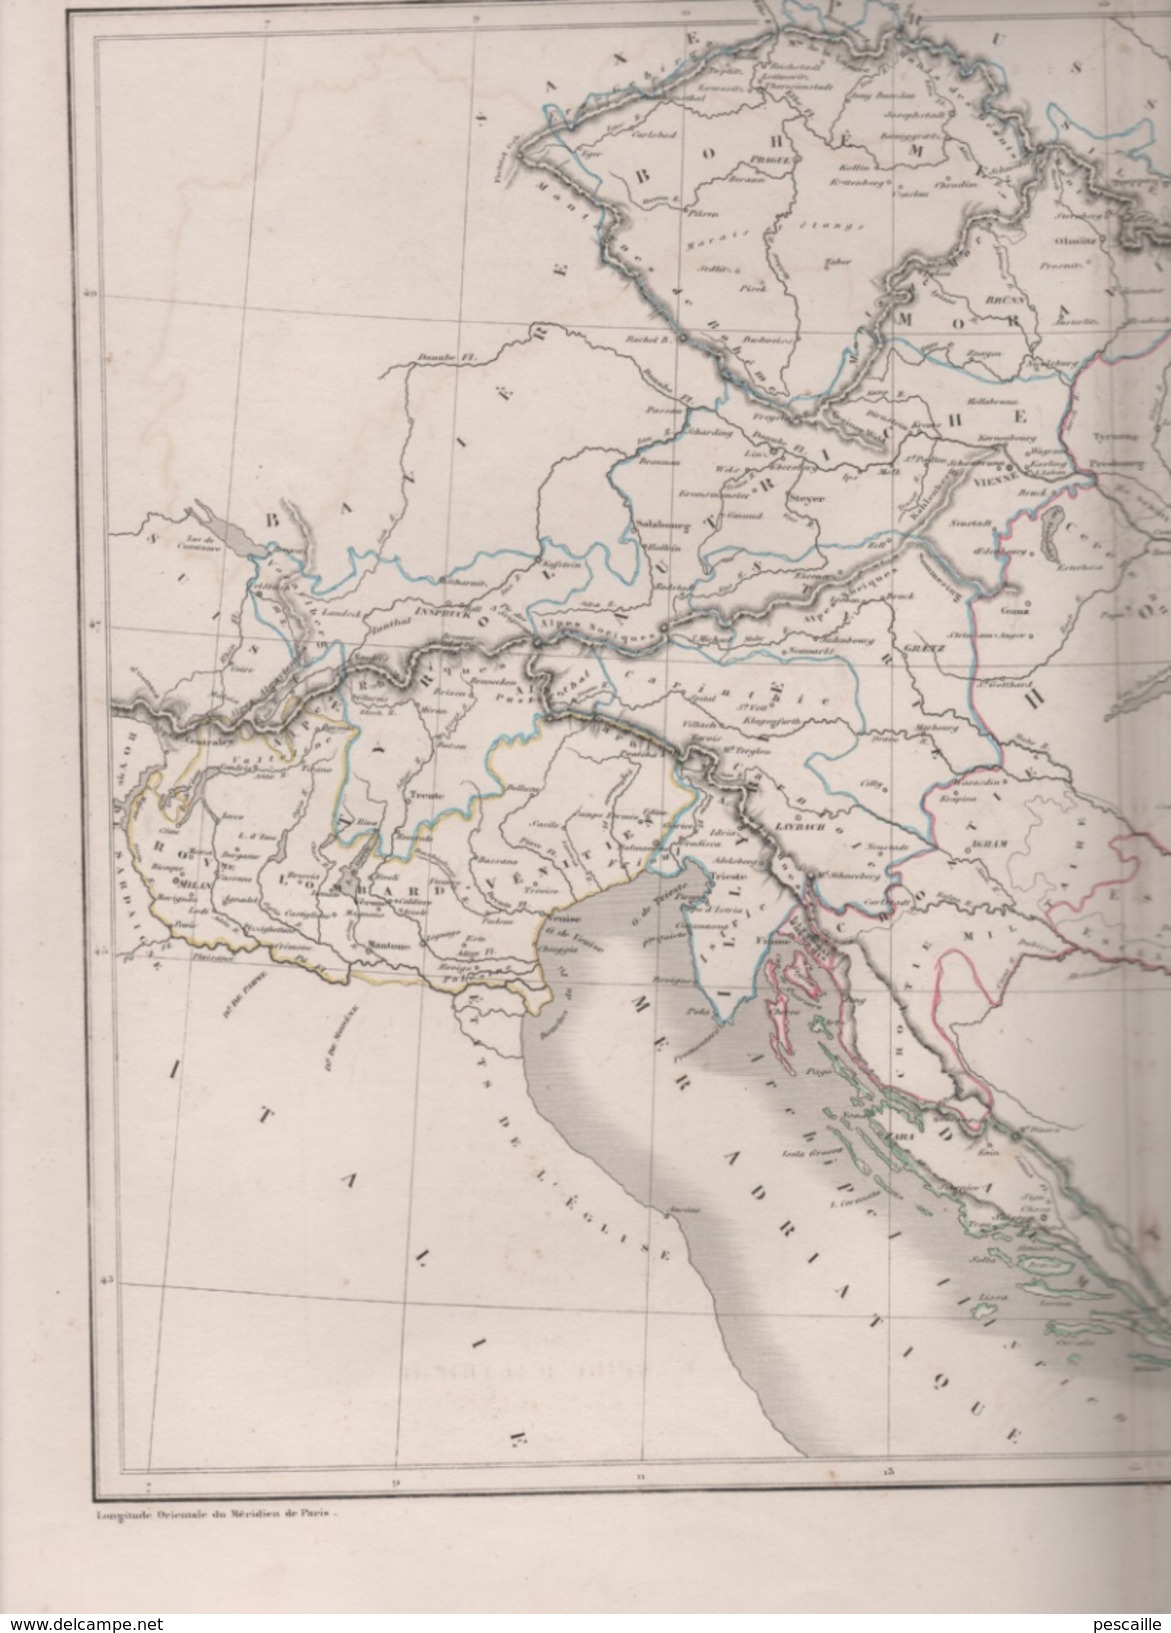 CARTE PHYSIQUE ET POLITIQUE DE L' EMPIRE D'AUTRICHE DRESSEE PAR L DUSSIEUX 1846 - AUTRICHE HONGRIE BALKANS ETC - Landkarten